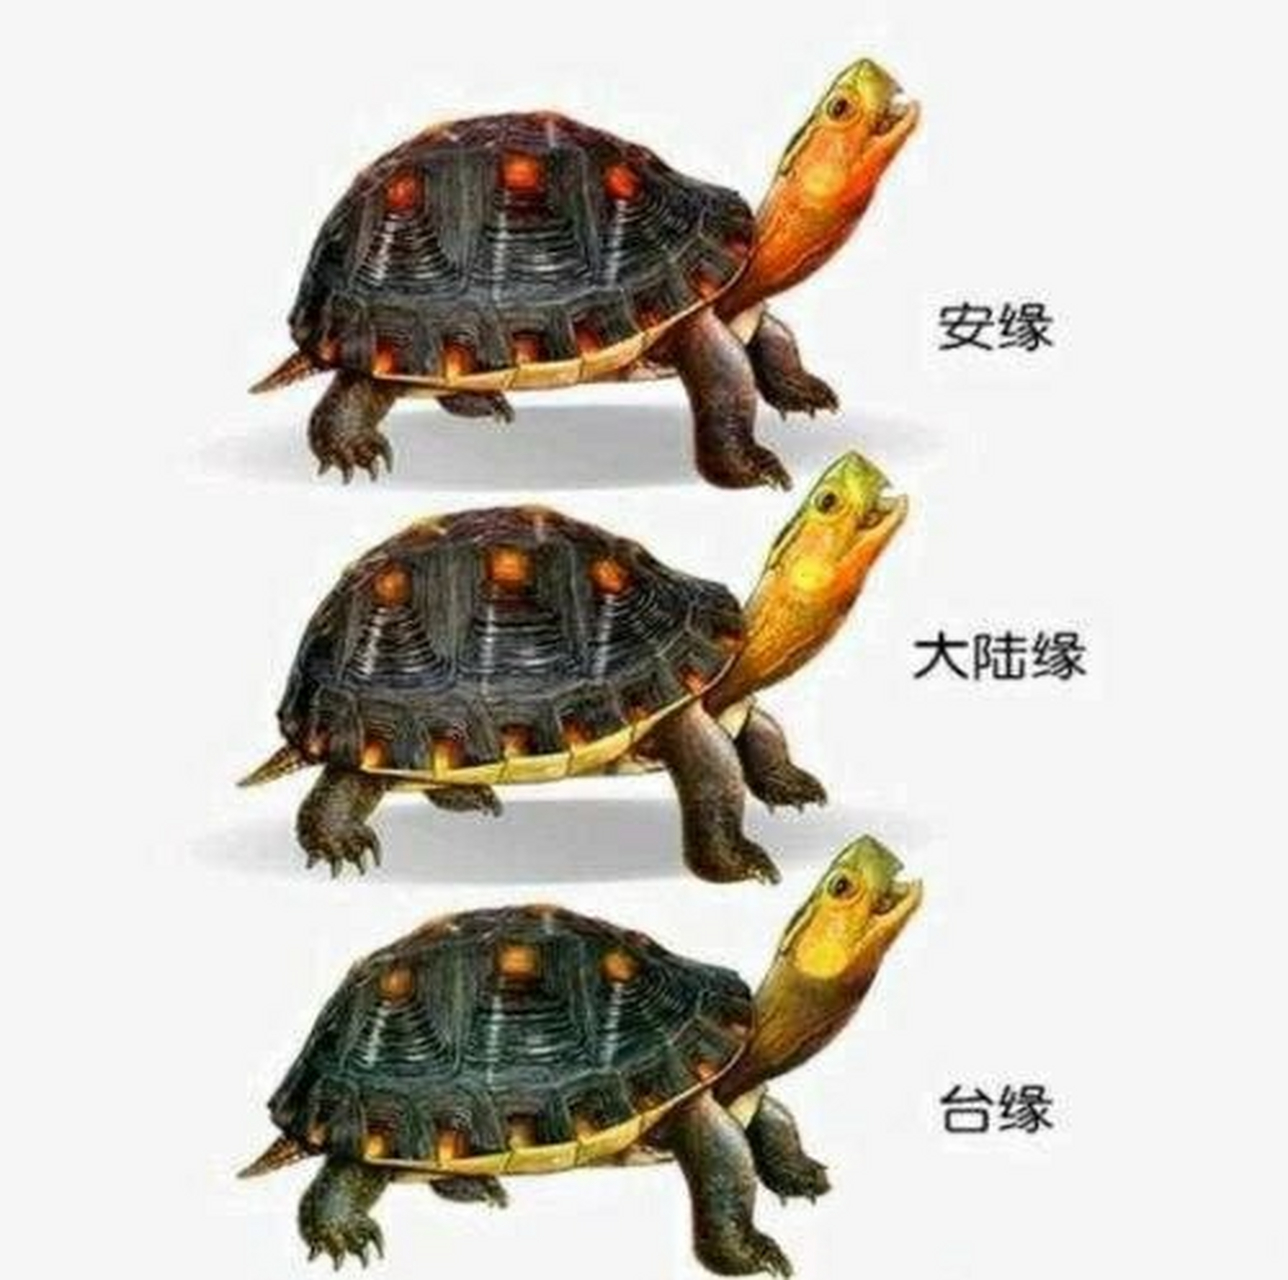 乌龟的种类图解图片